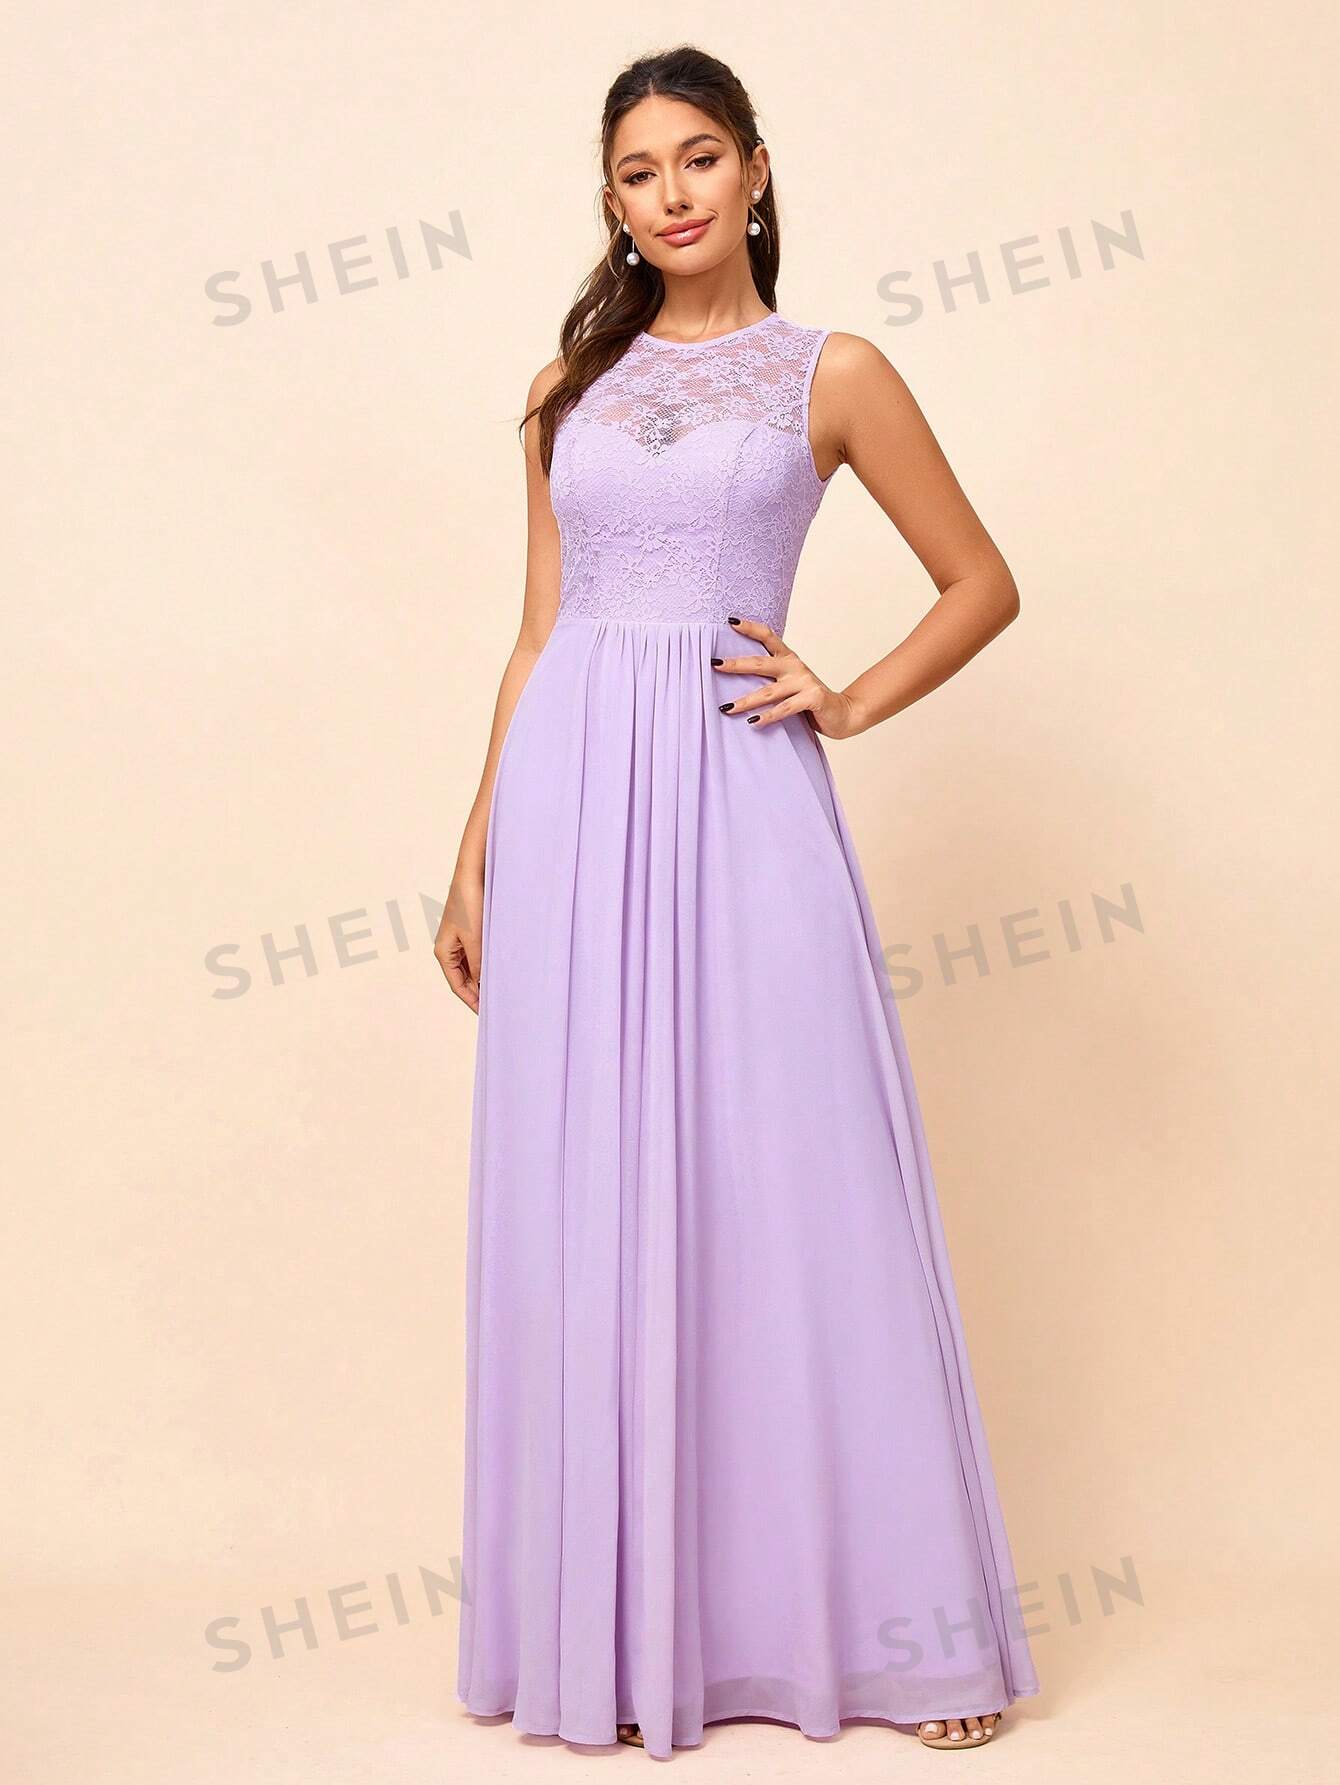 SHEIN Belle Женское кружевное платье макси без рукавов с круглым вырезом (для взрослых), фиолетовый женское платье макси в богемном стиле с круглым вырезом и длинным рукавом